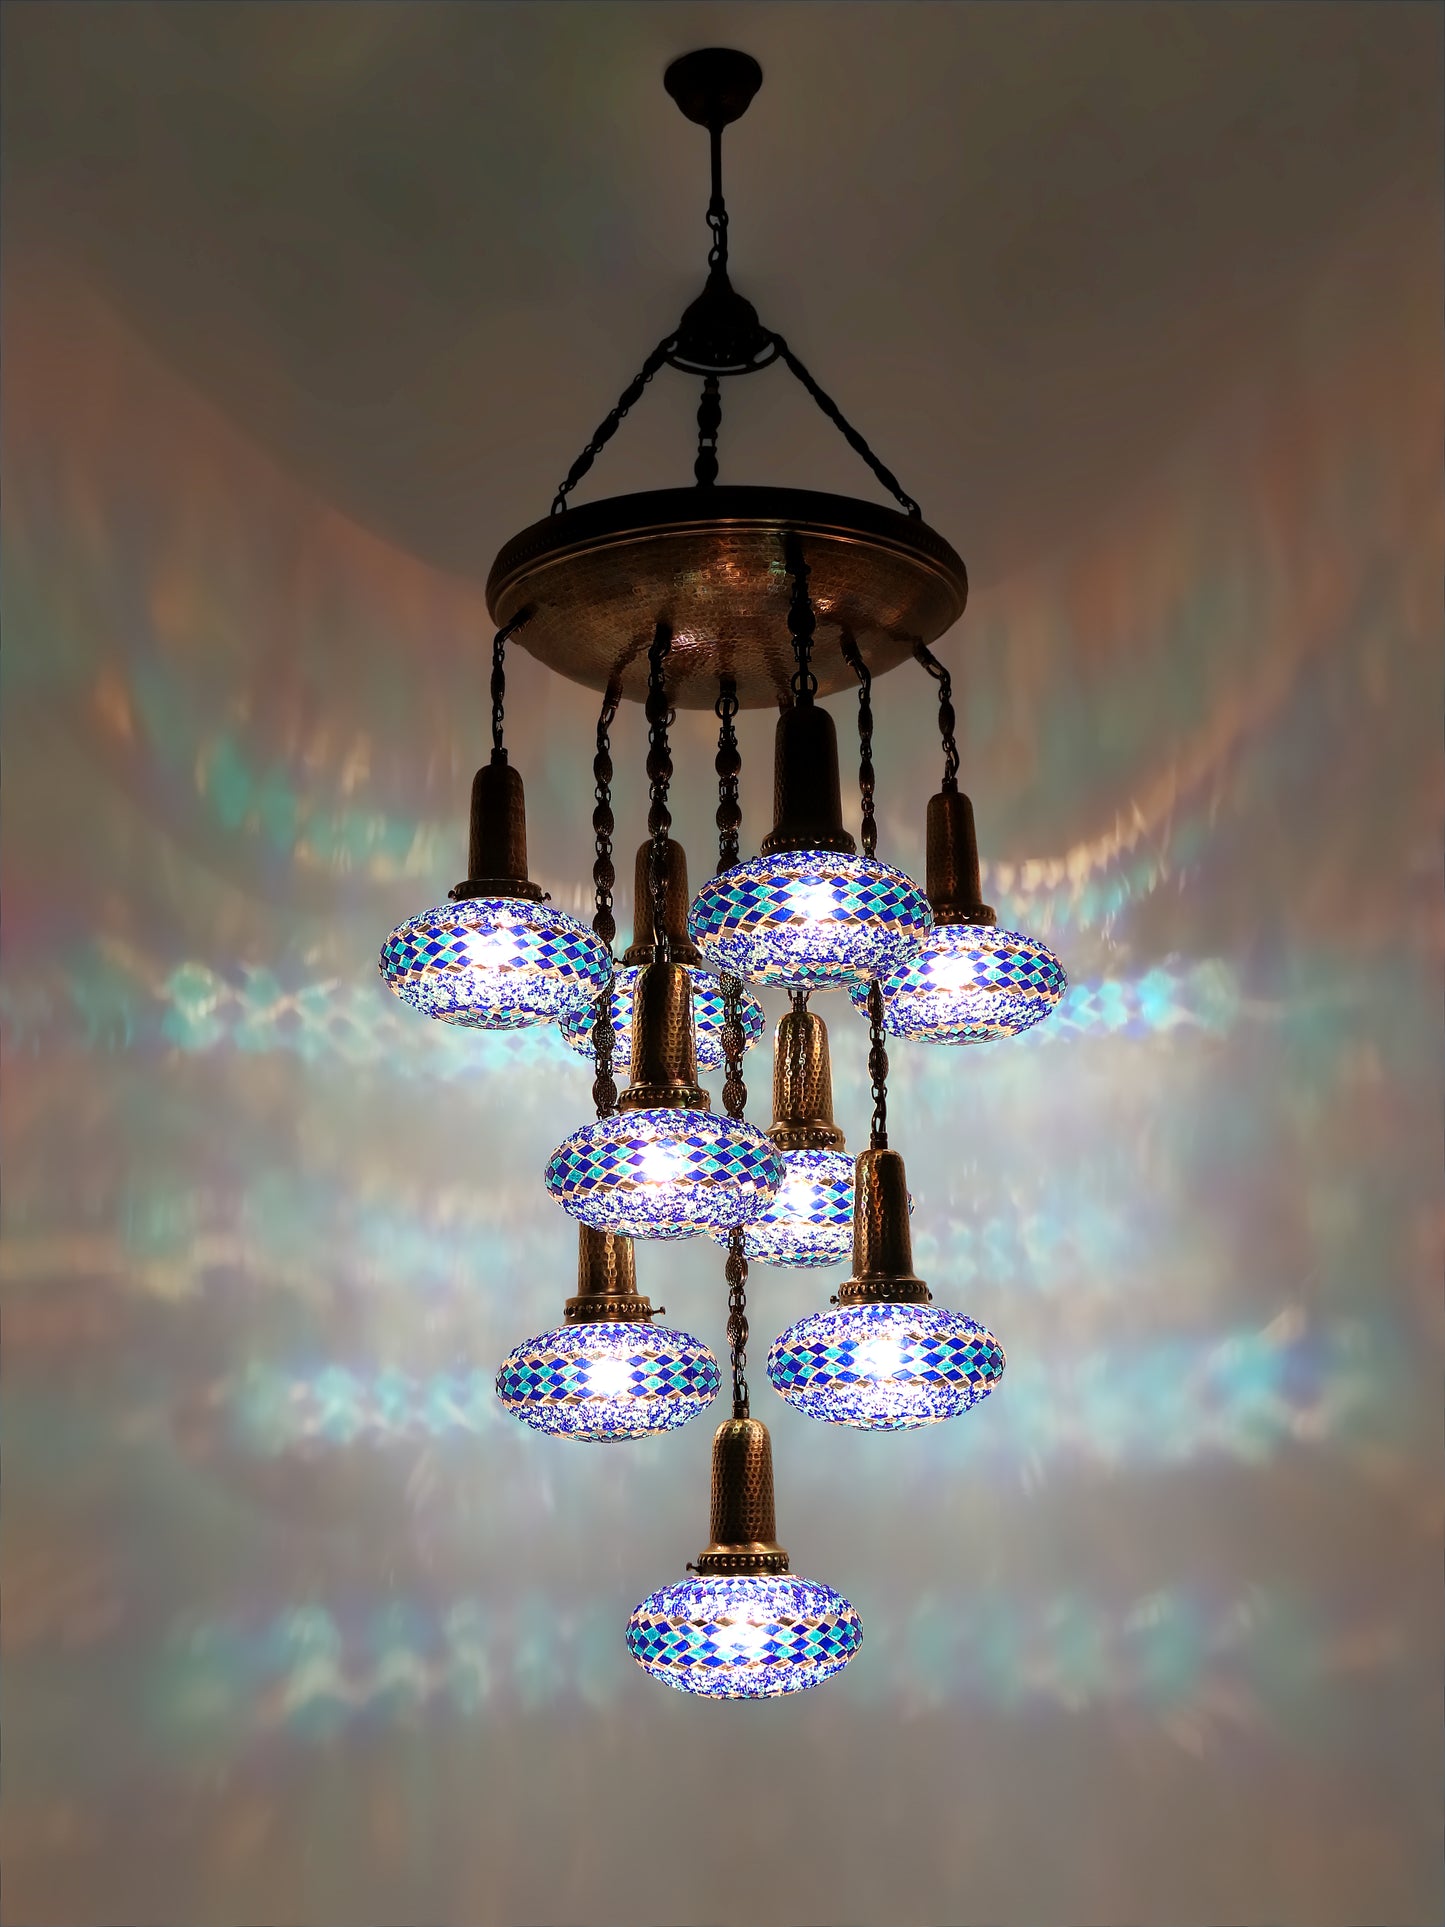 Turkish Mosaic Chandelier 9-Globe Sultan Design Ceiling Light